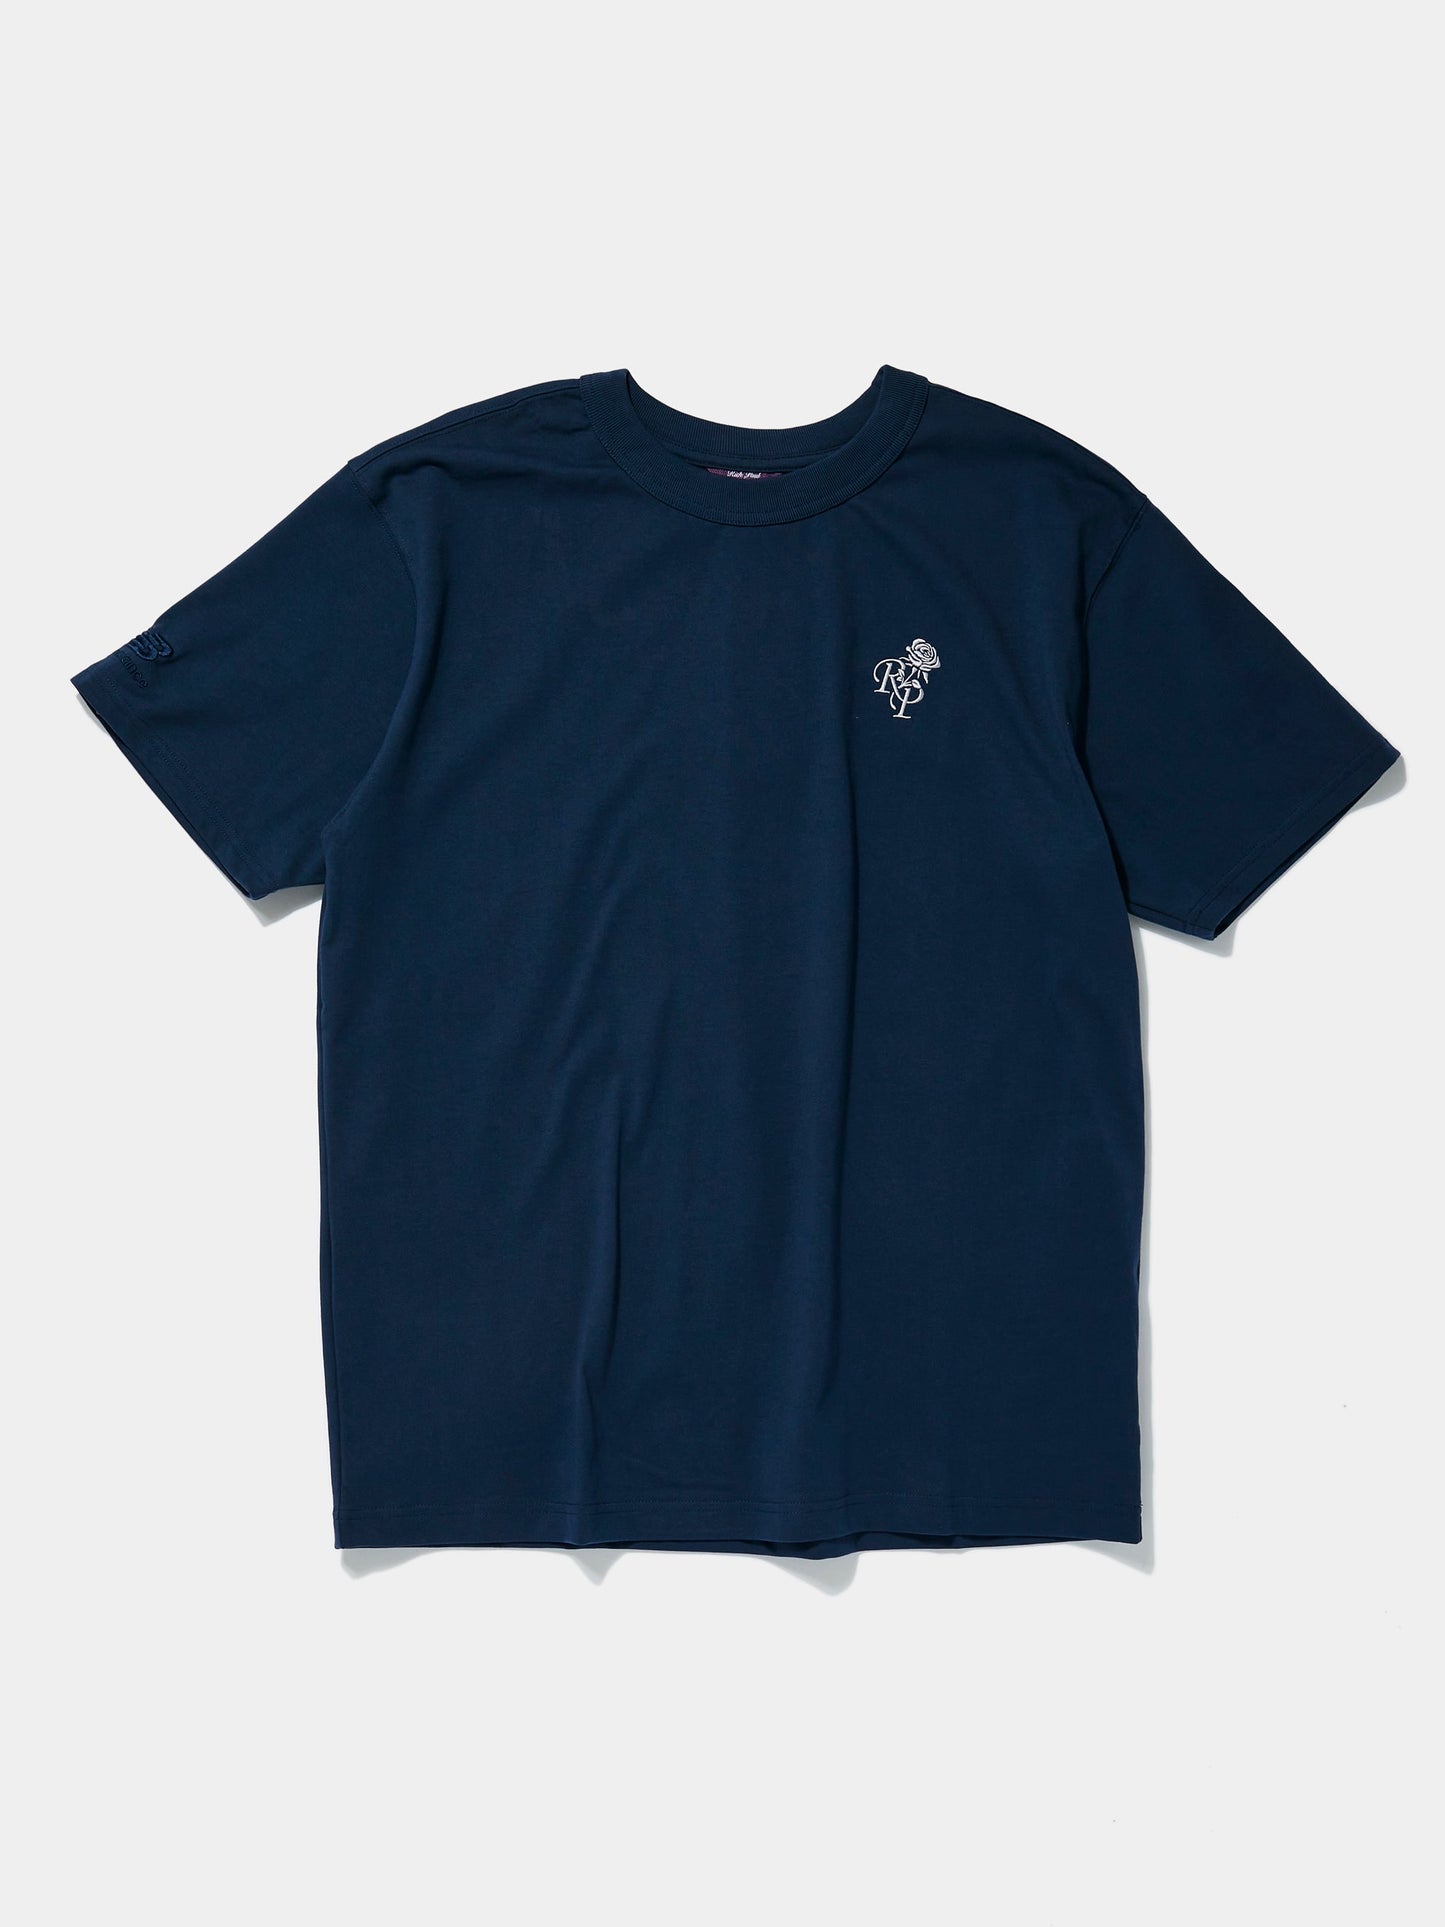 Rich Paul T-Shirt (Navy)